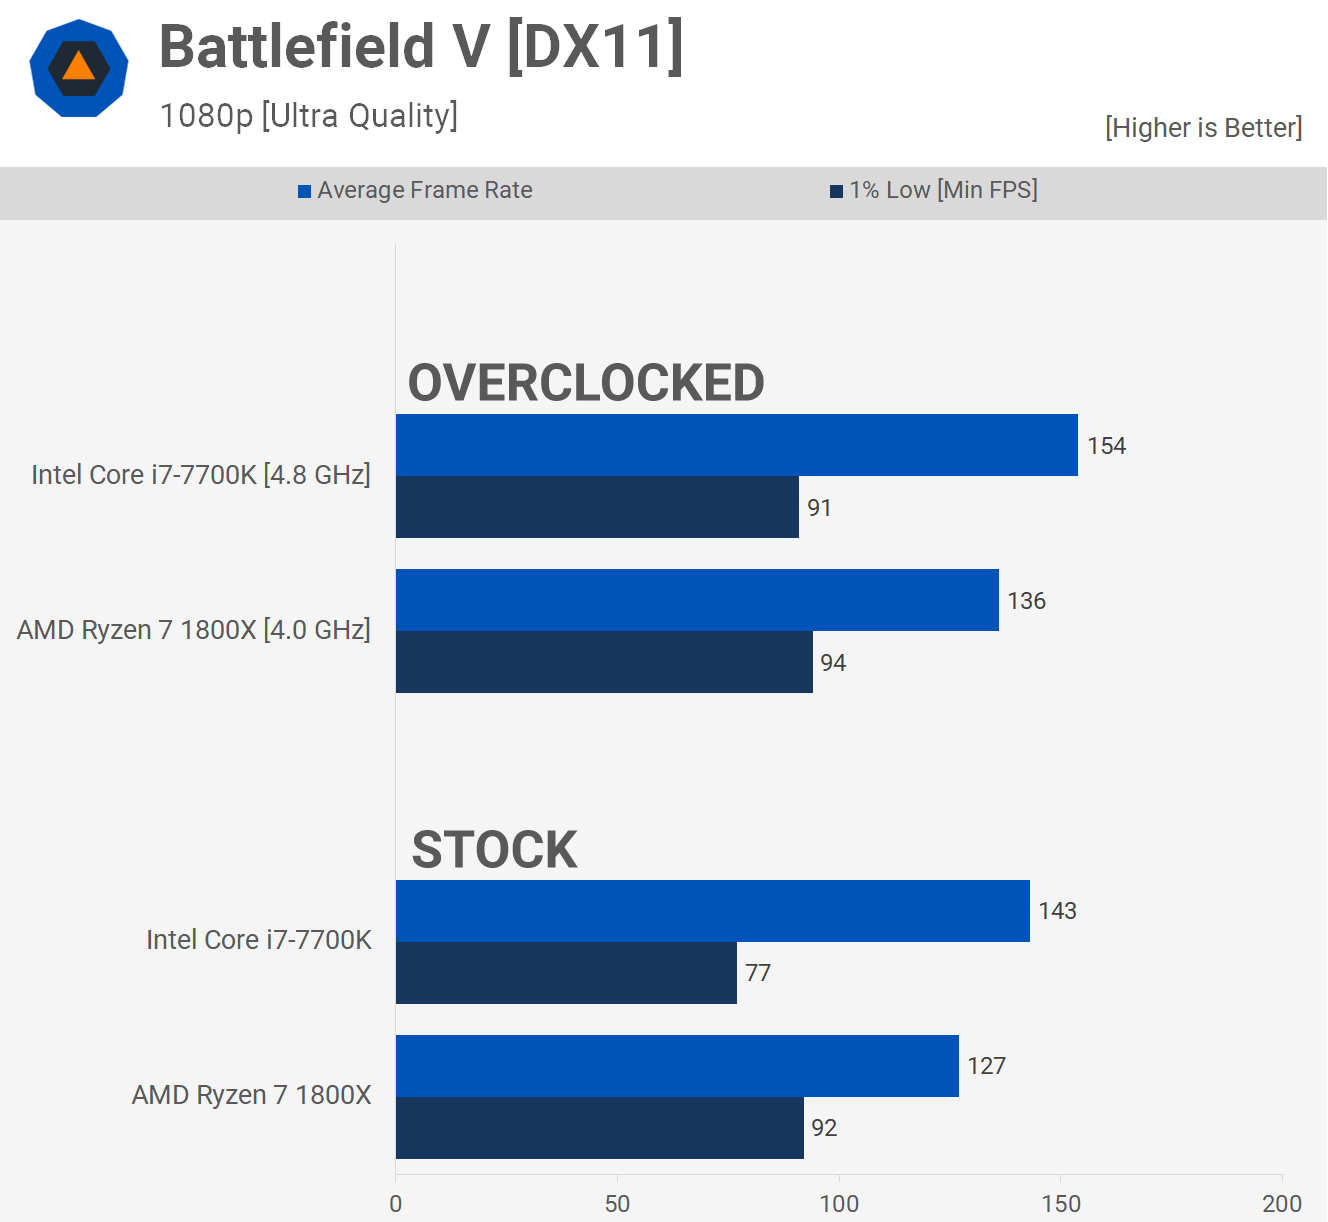 1658426421 163 Dos anos despues AMD Ryzen 7 1800X vs Intel Core